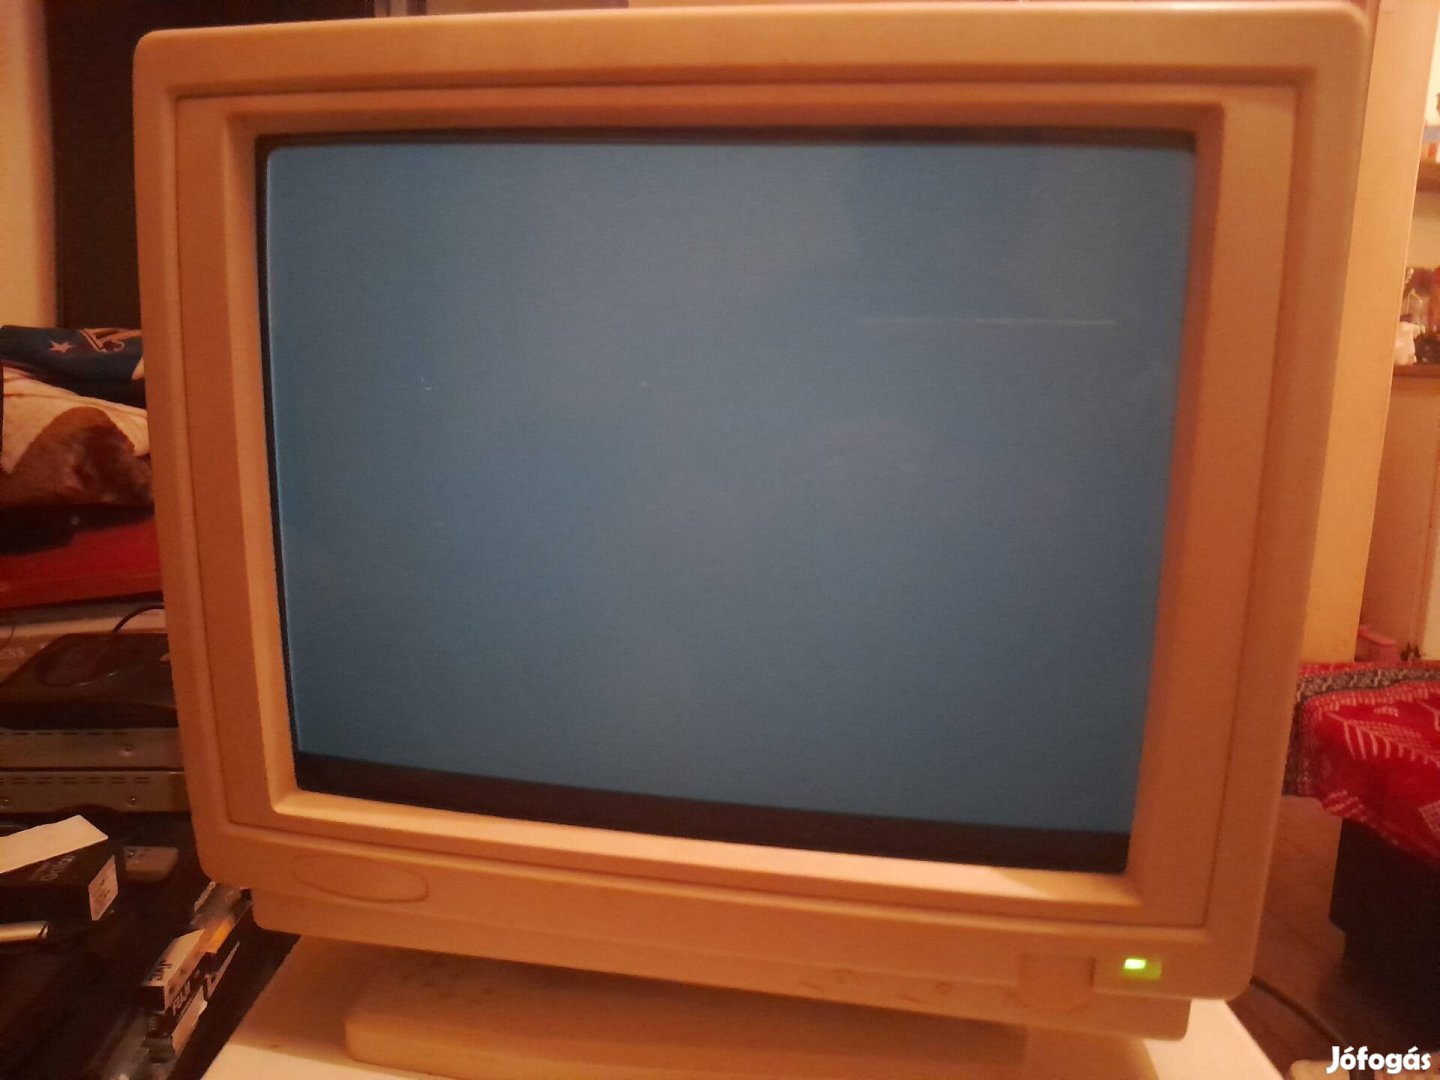 486-os számítógép,  monitor fekete-fehér színű 